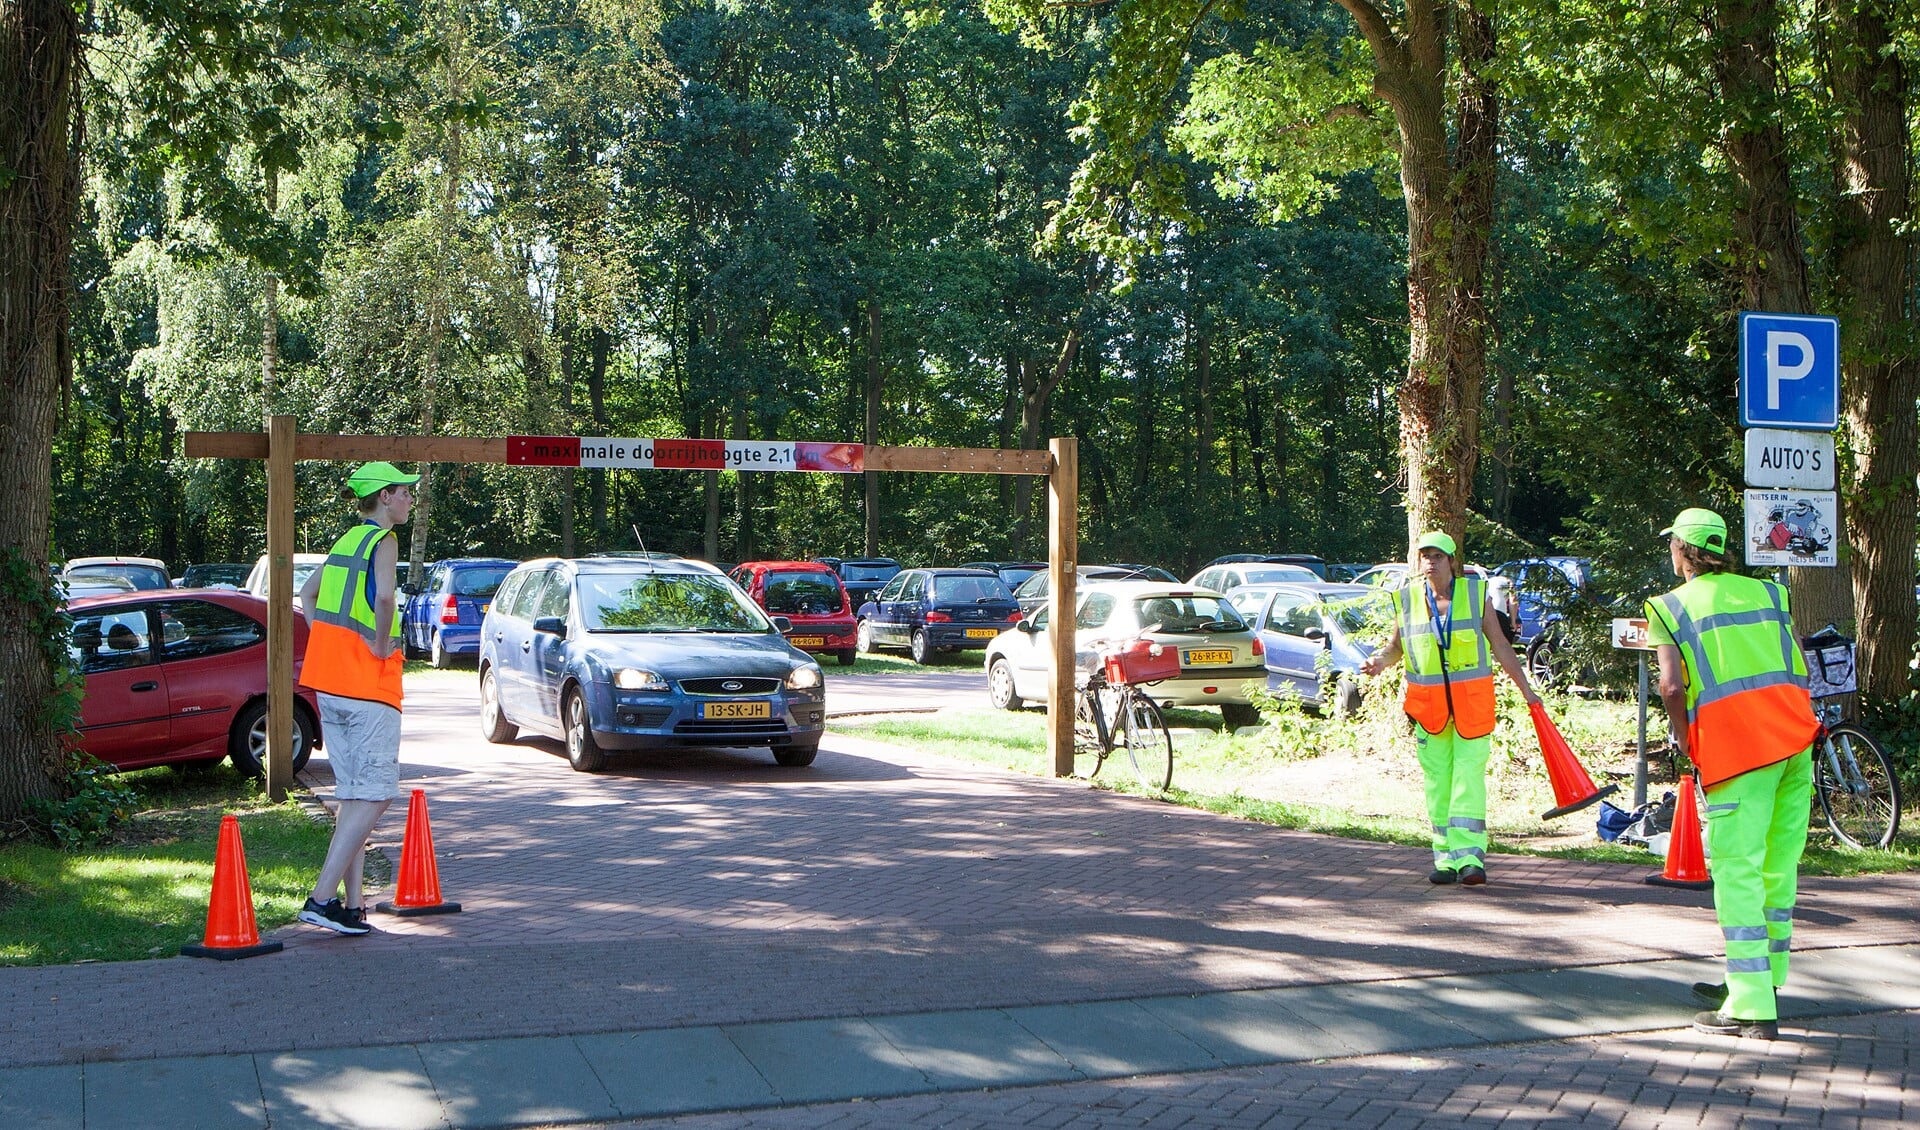 Parkeerwachters leiden het verkeer bij Sijsjesberg in goede banen, maar vol is vol!